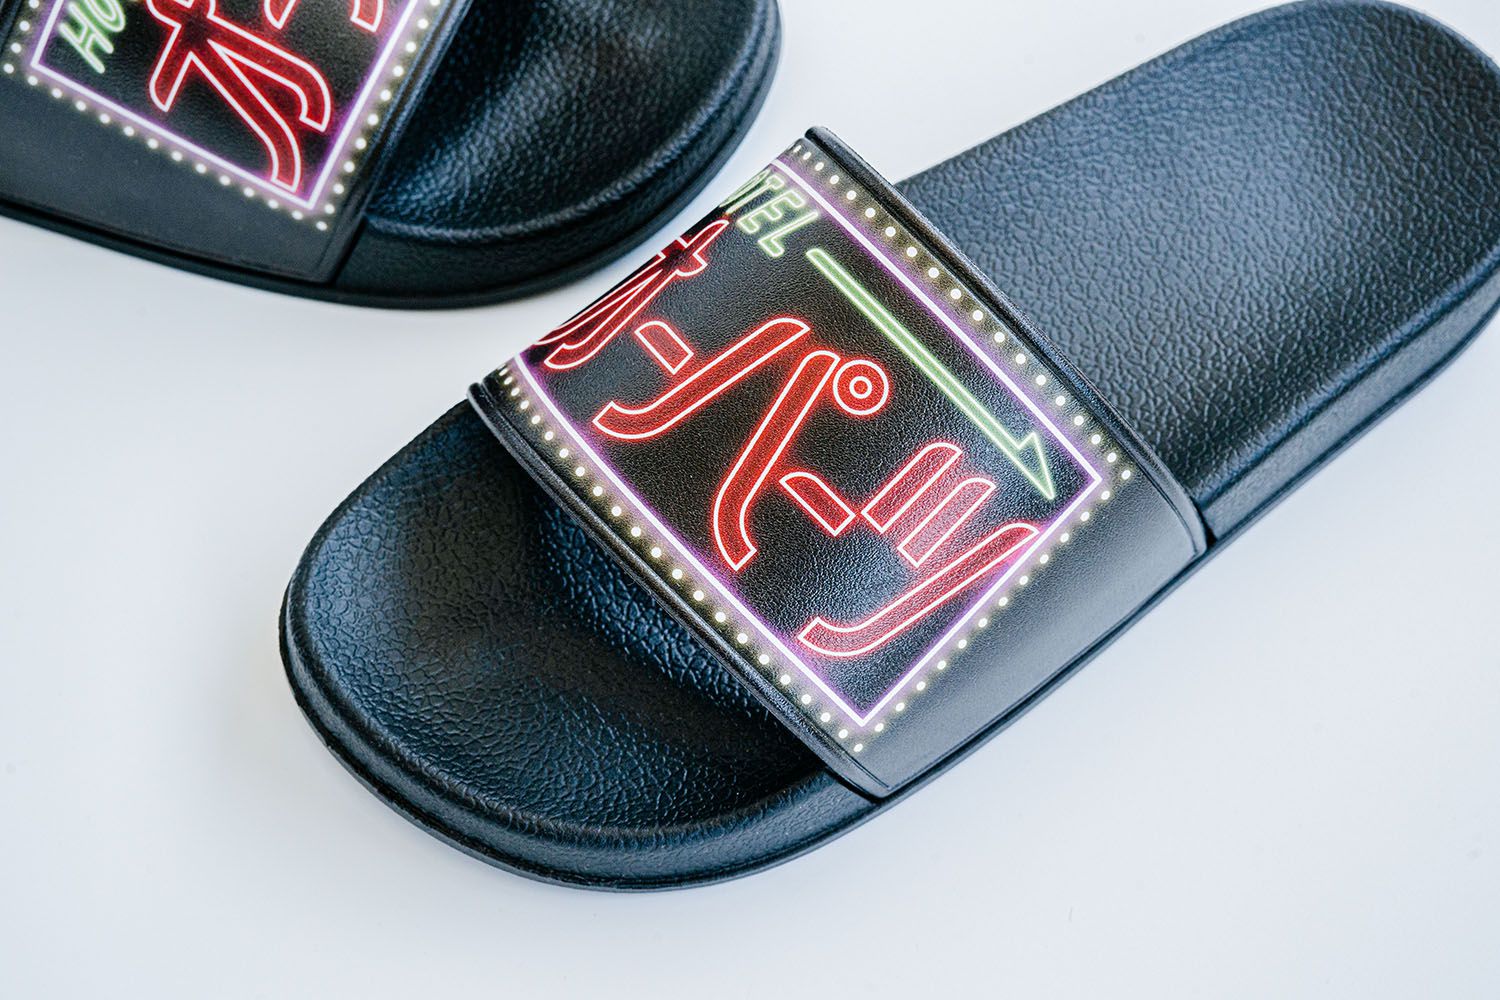 SUZURI’s Sandals